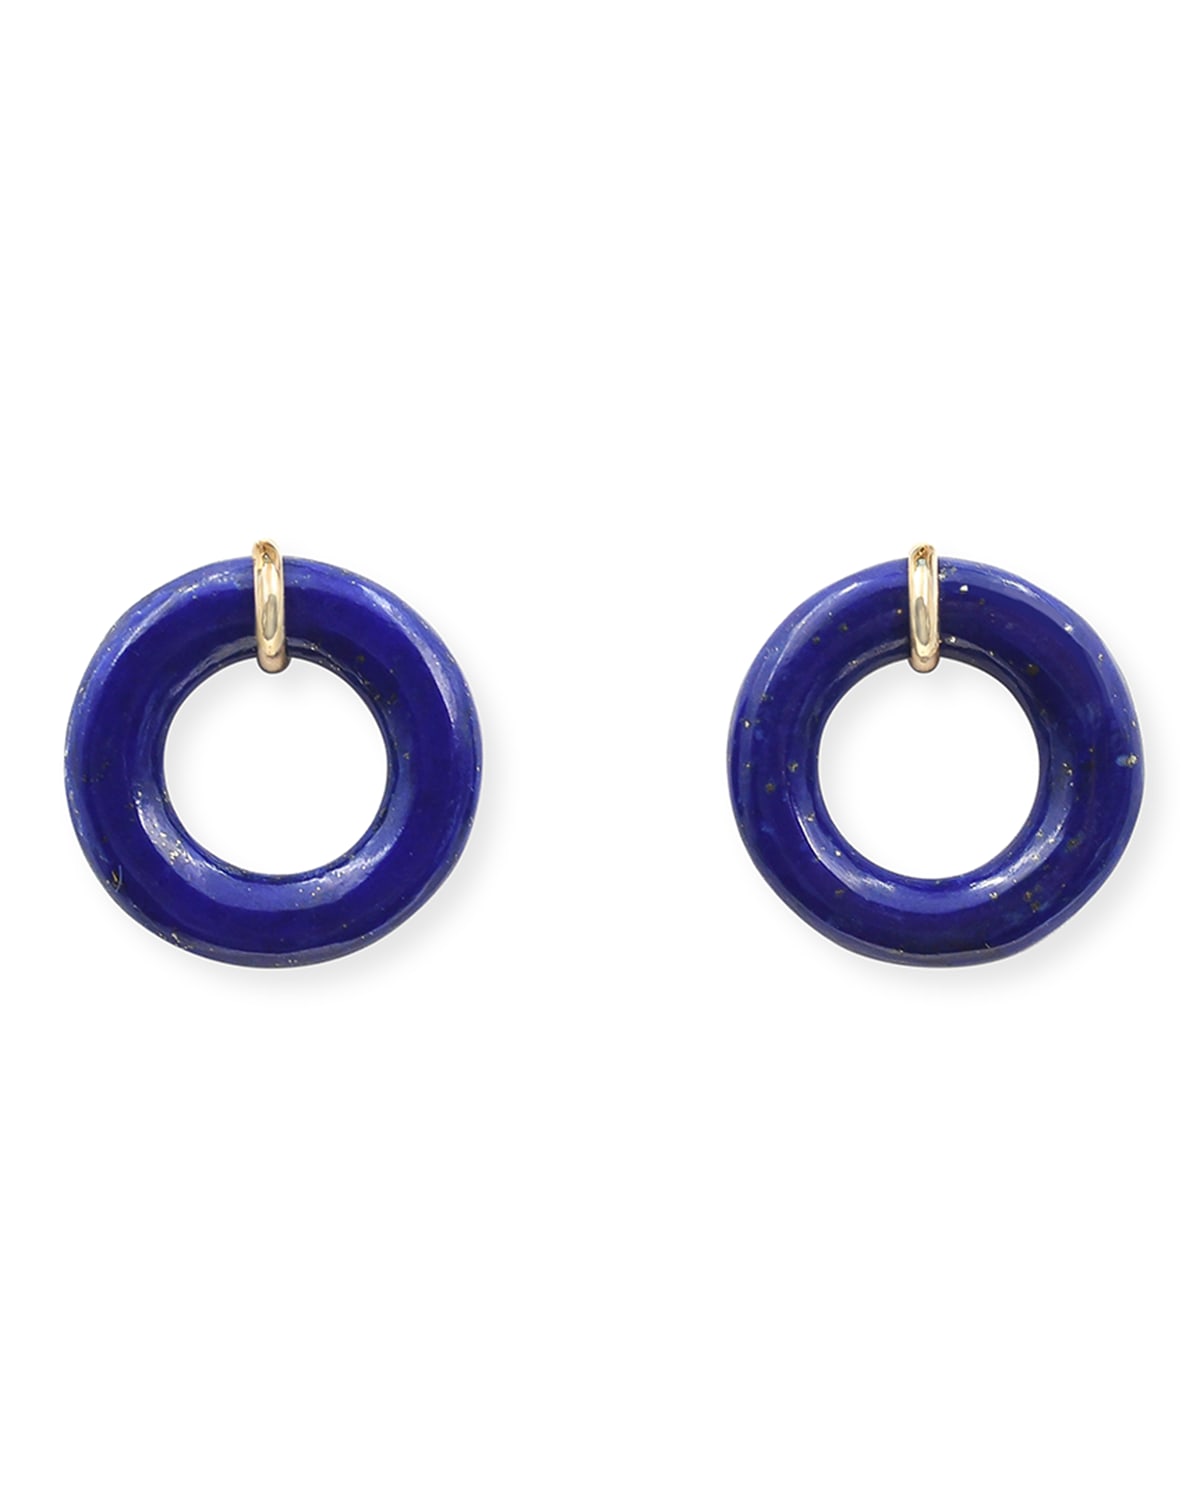 BONDEYE JEWELRY Blueberry Glazed Munchkin Earrings